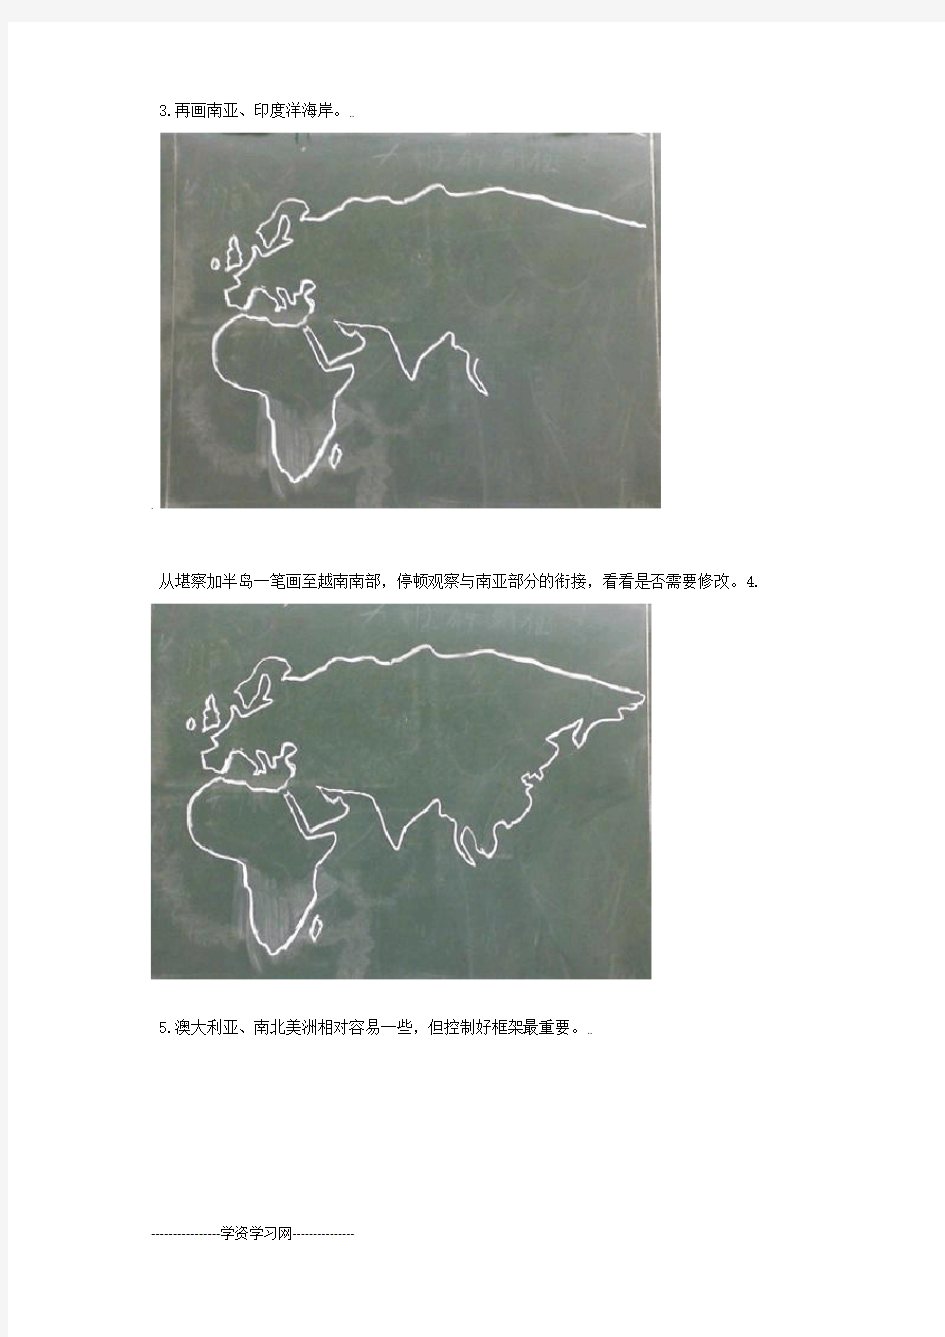 绘制世界地图一般步骤